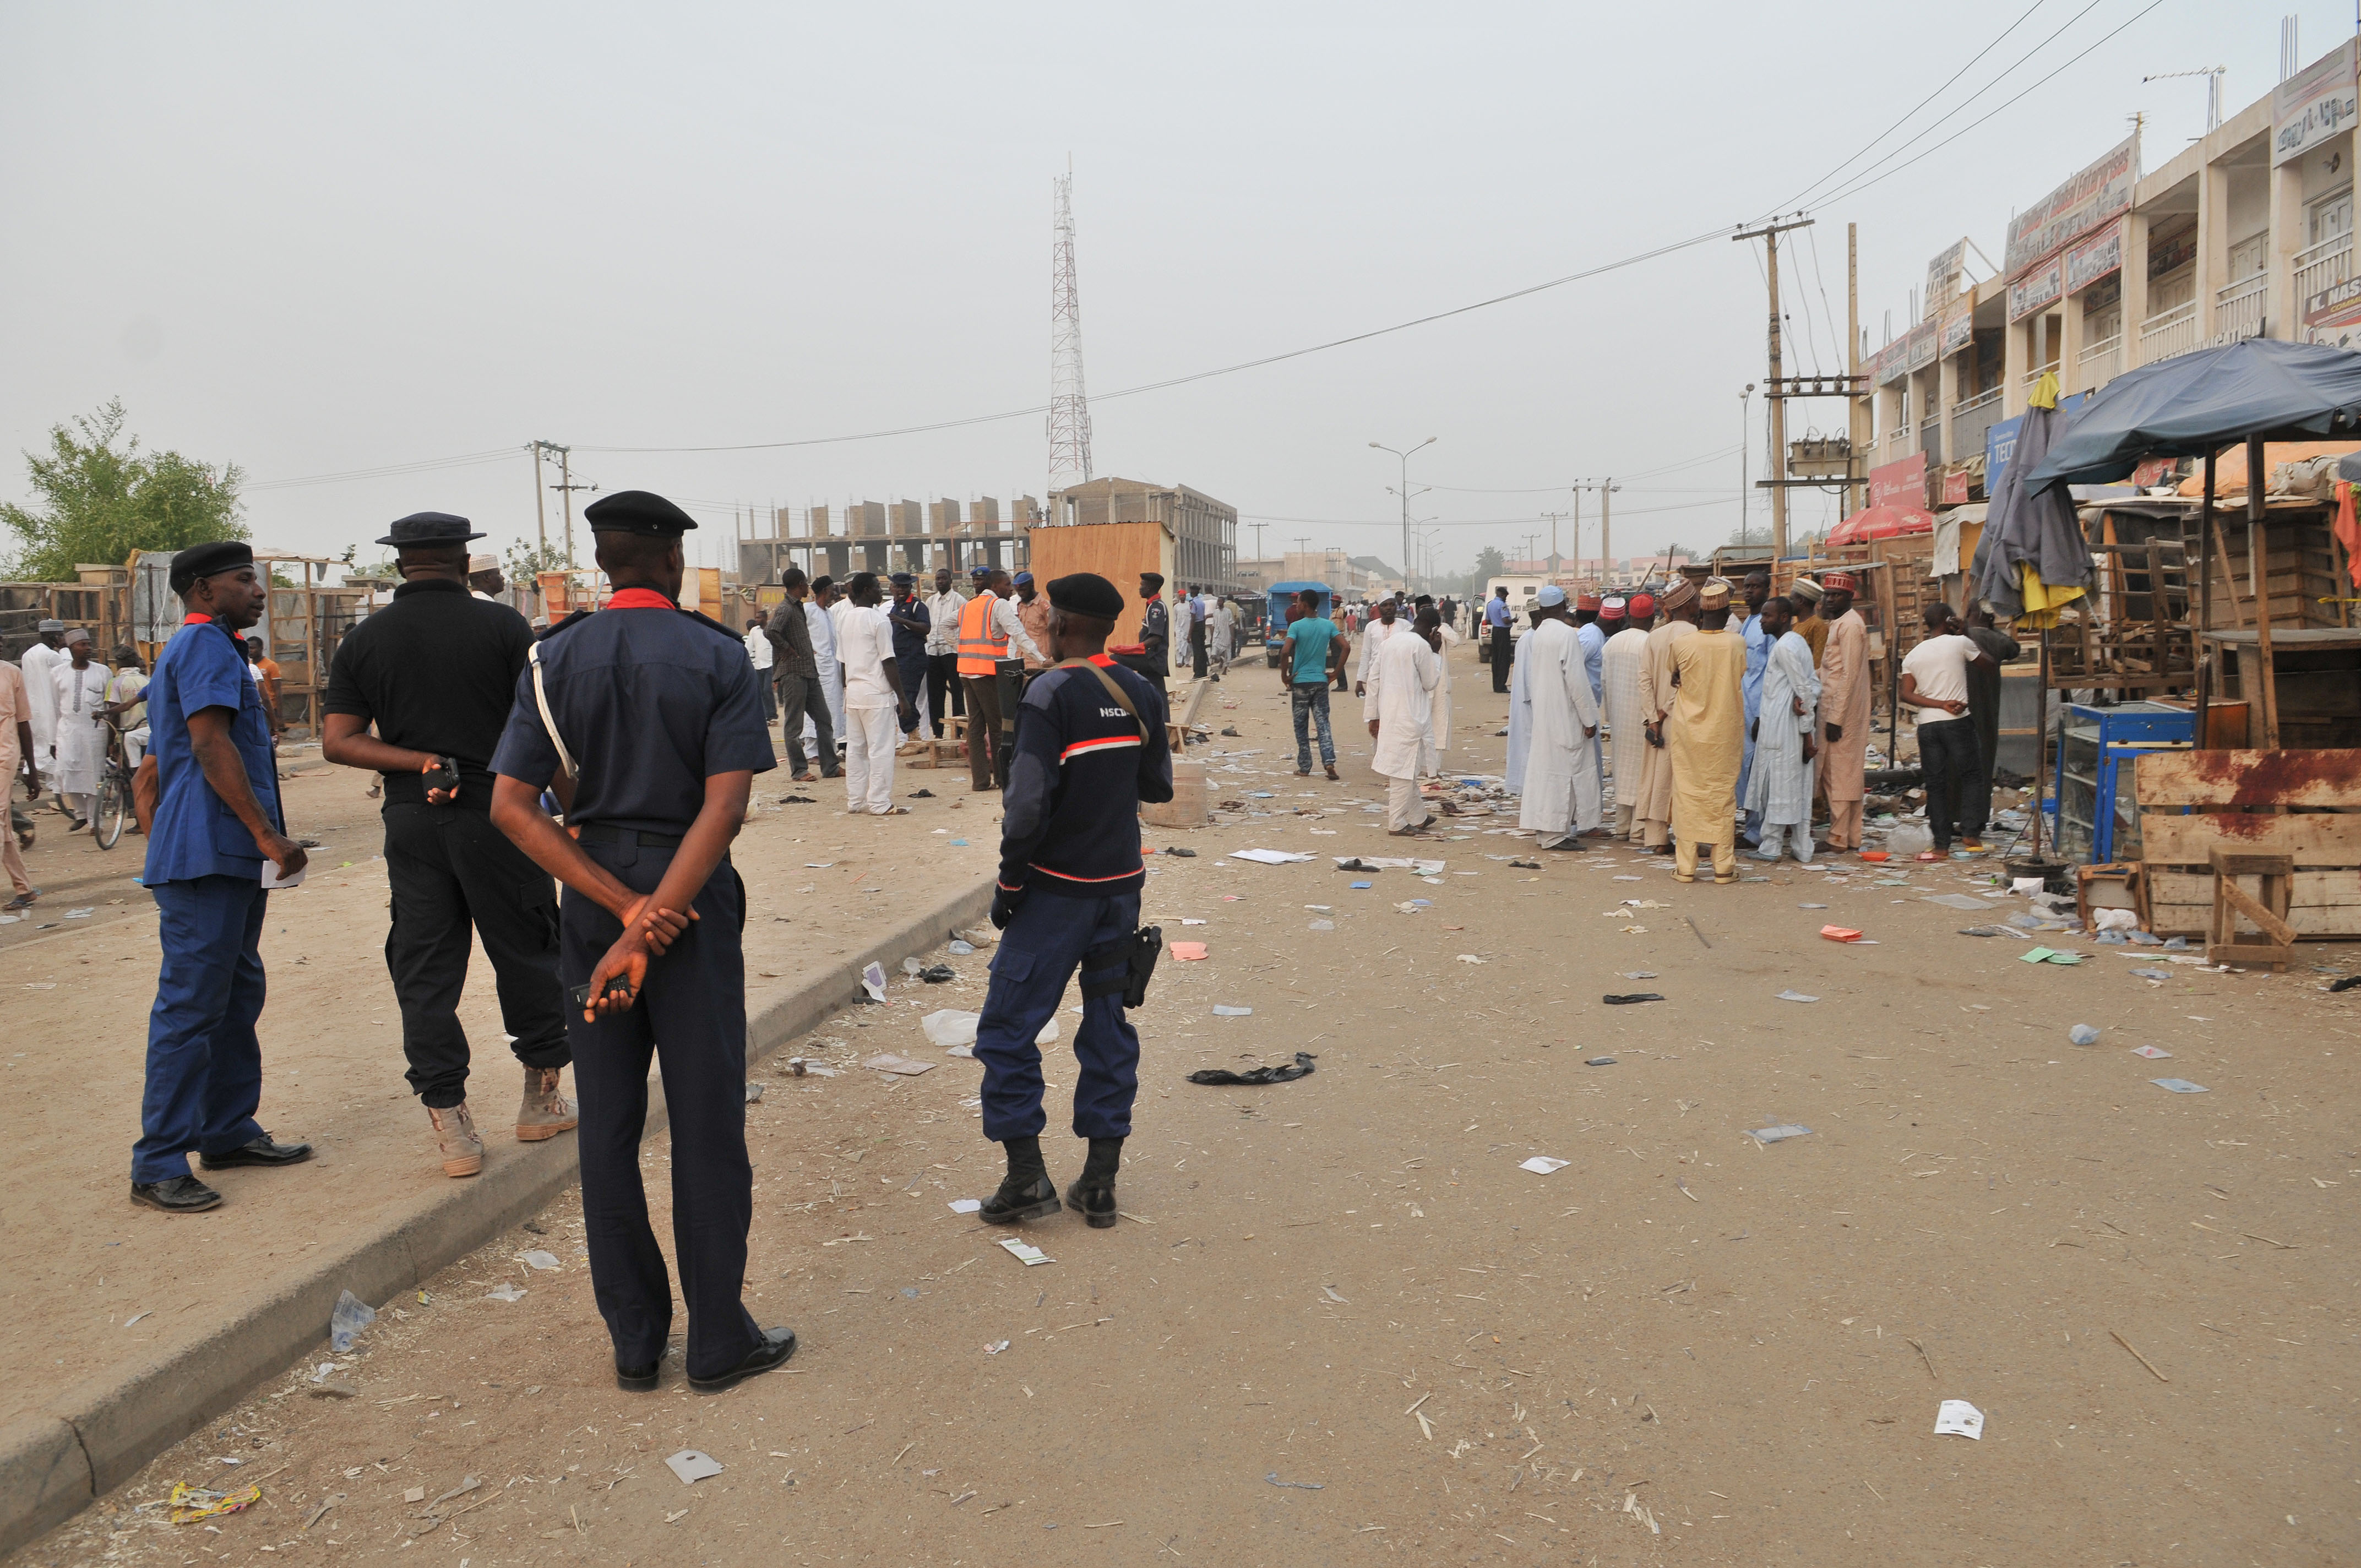 Νίγηρας: Ενοπλοι της Μπόκο Χαράμ σκότωσαν 18 άτομα